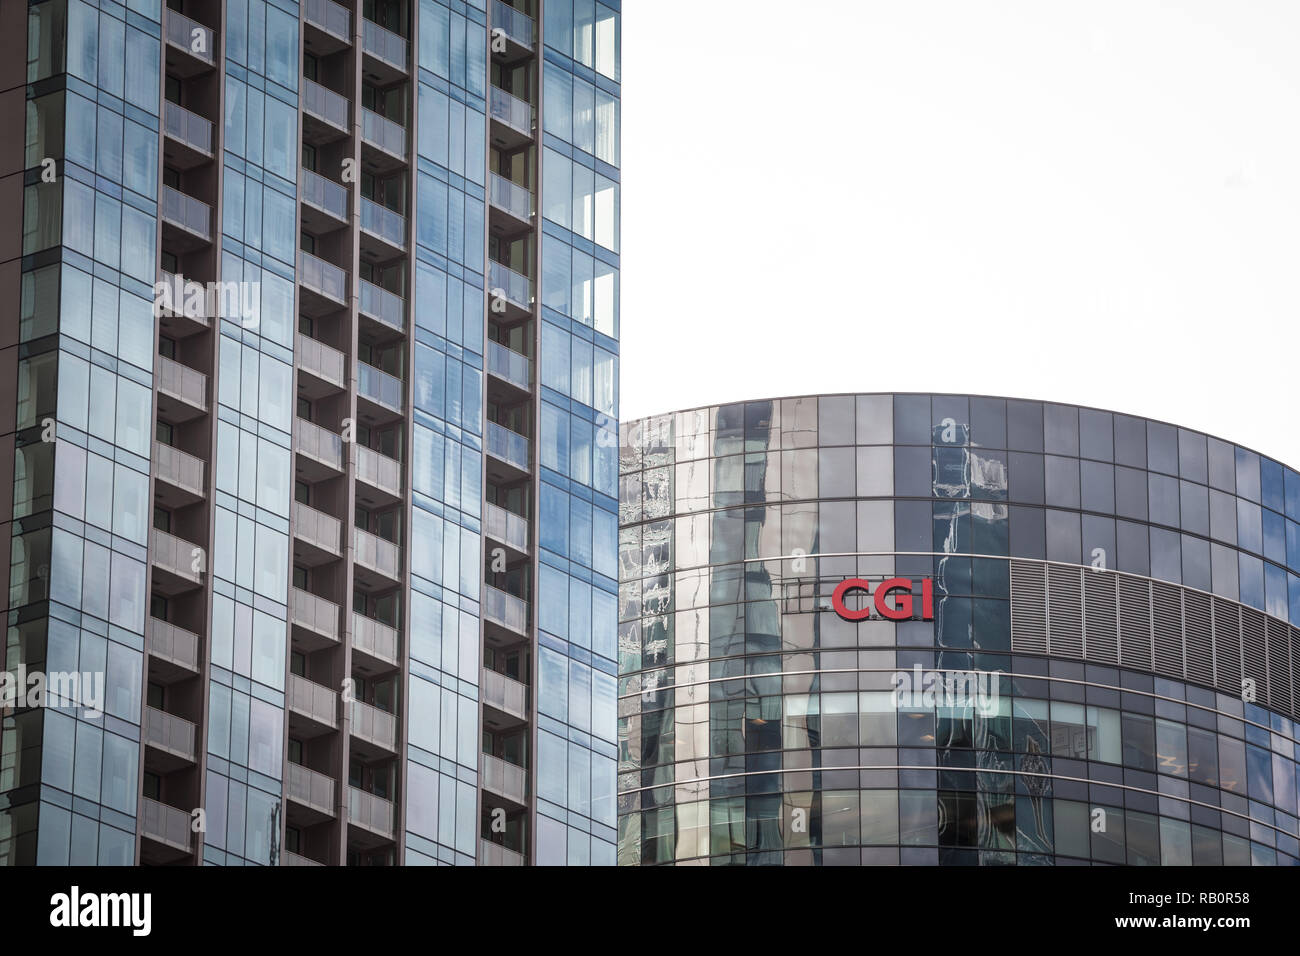 MONTREAL, KANADA - 4. NOVEMBER 2018: CGI-Gruppe auf ihren Hauptsitz in Montreal, Quebec. Auch als Conseillers en Gestion Informatique bekannt, es ist eine C Stockfoto